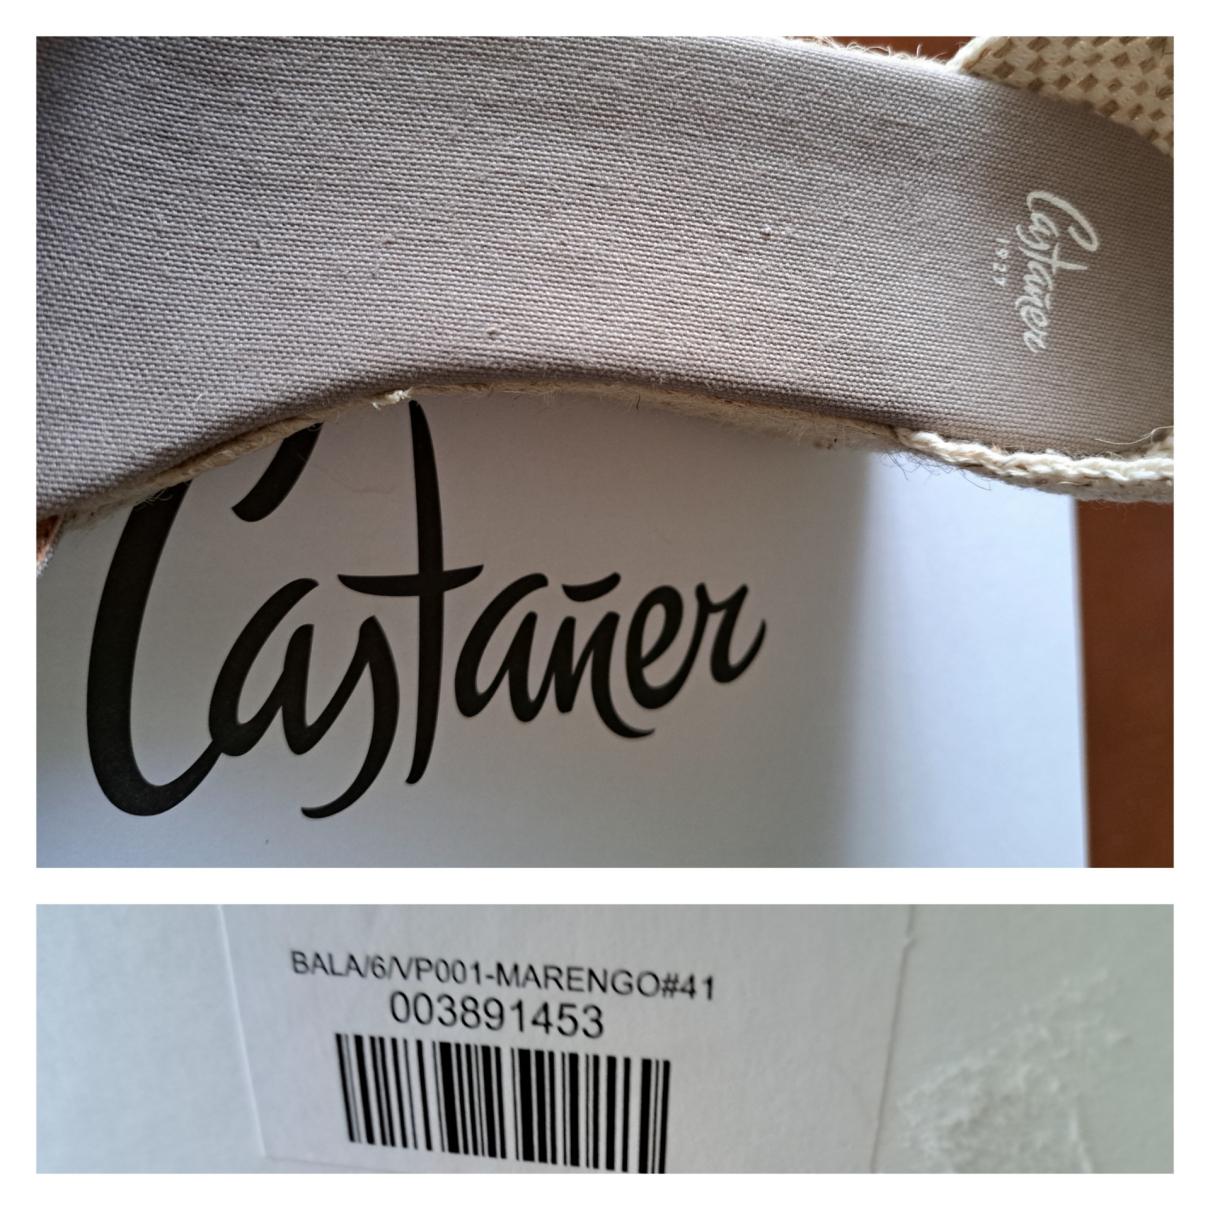 Buy Castaner Cloth espadrilles online